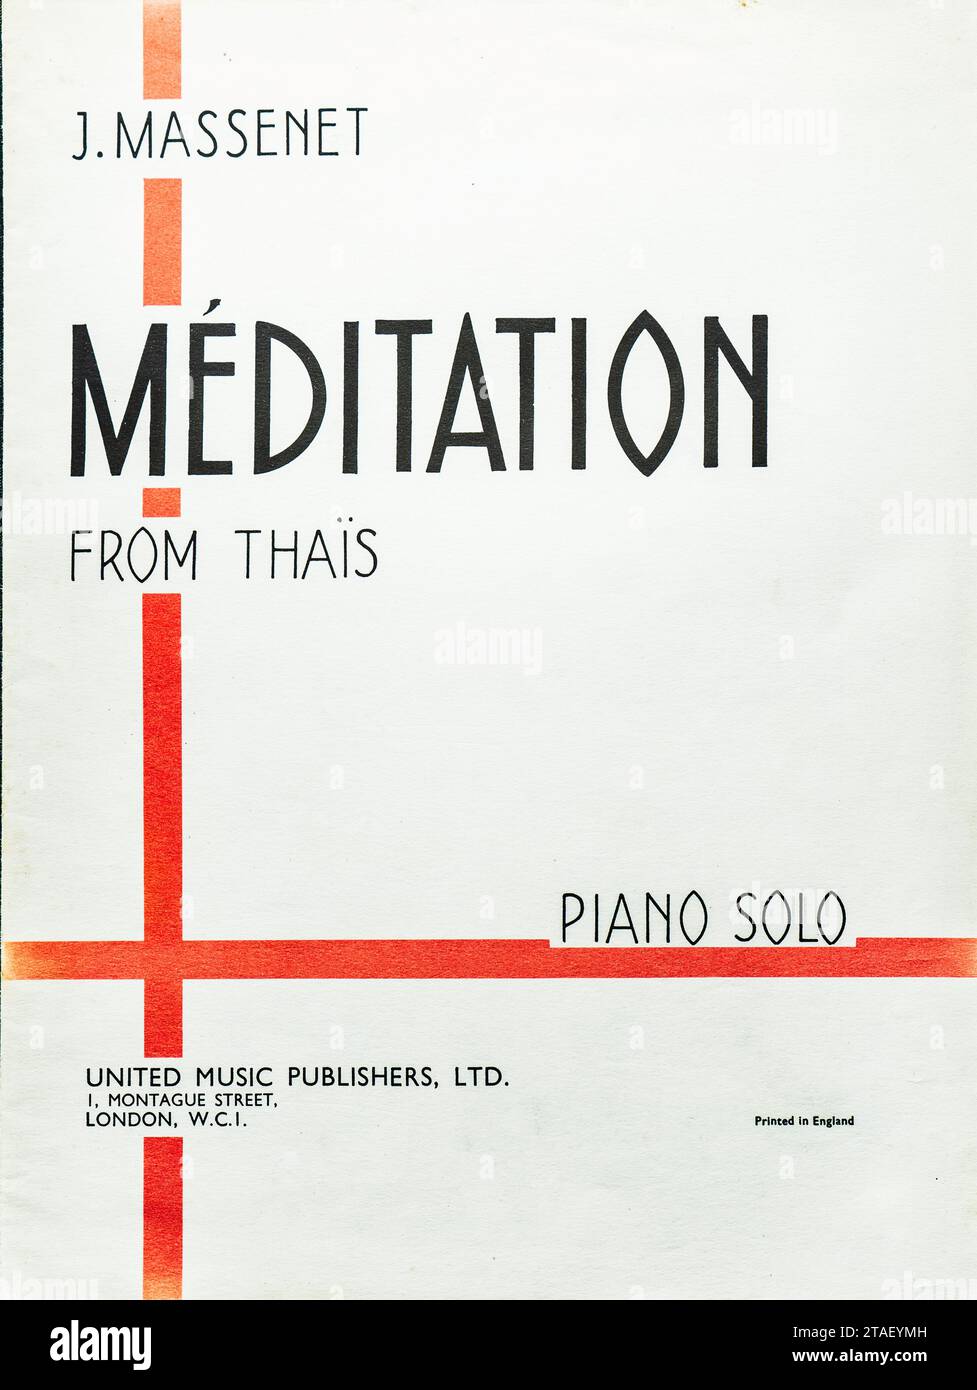 Klassische Noten - Massenets 'Méditation from Thais' für Klavier. Minimalistisches Notenblatt für J. Massenets berühmte Klavierkomposition. Stockfoto